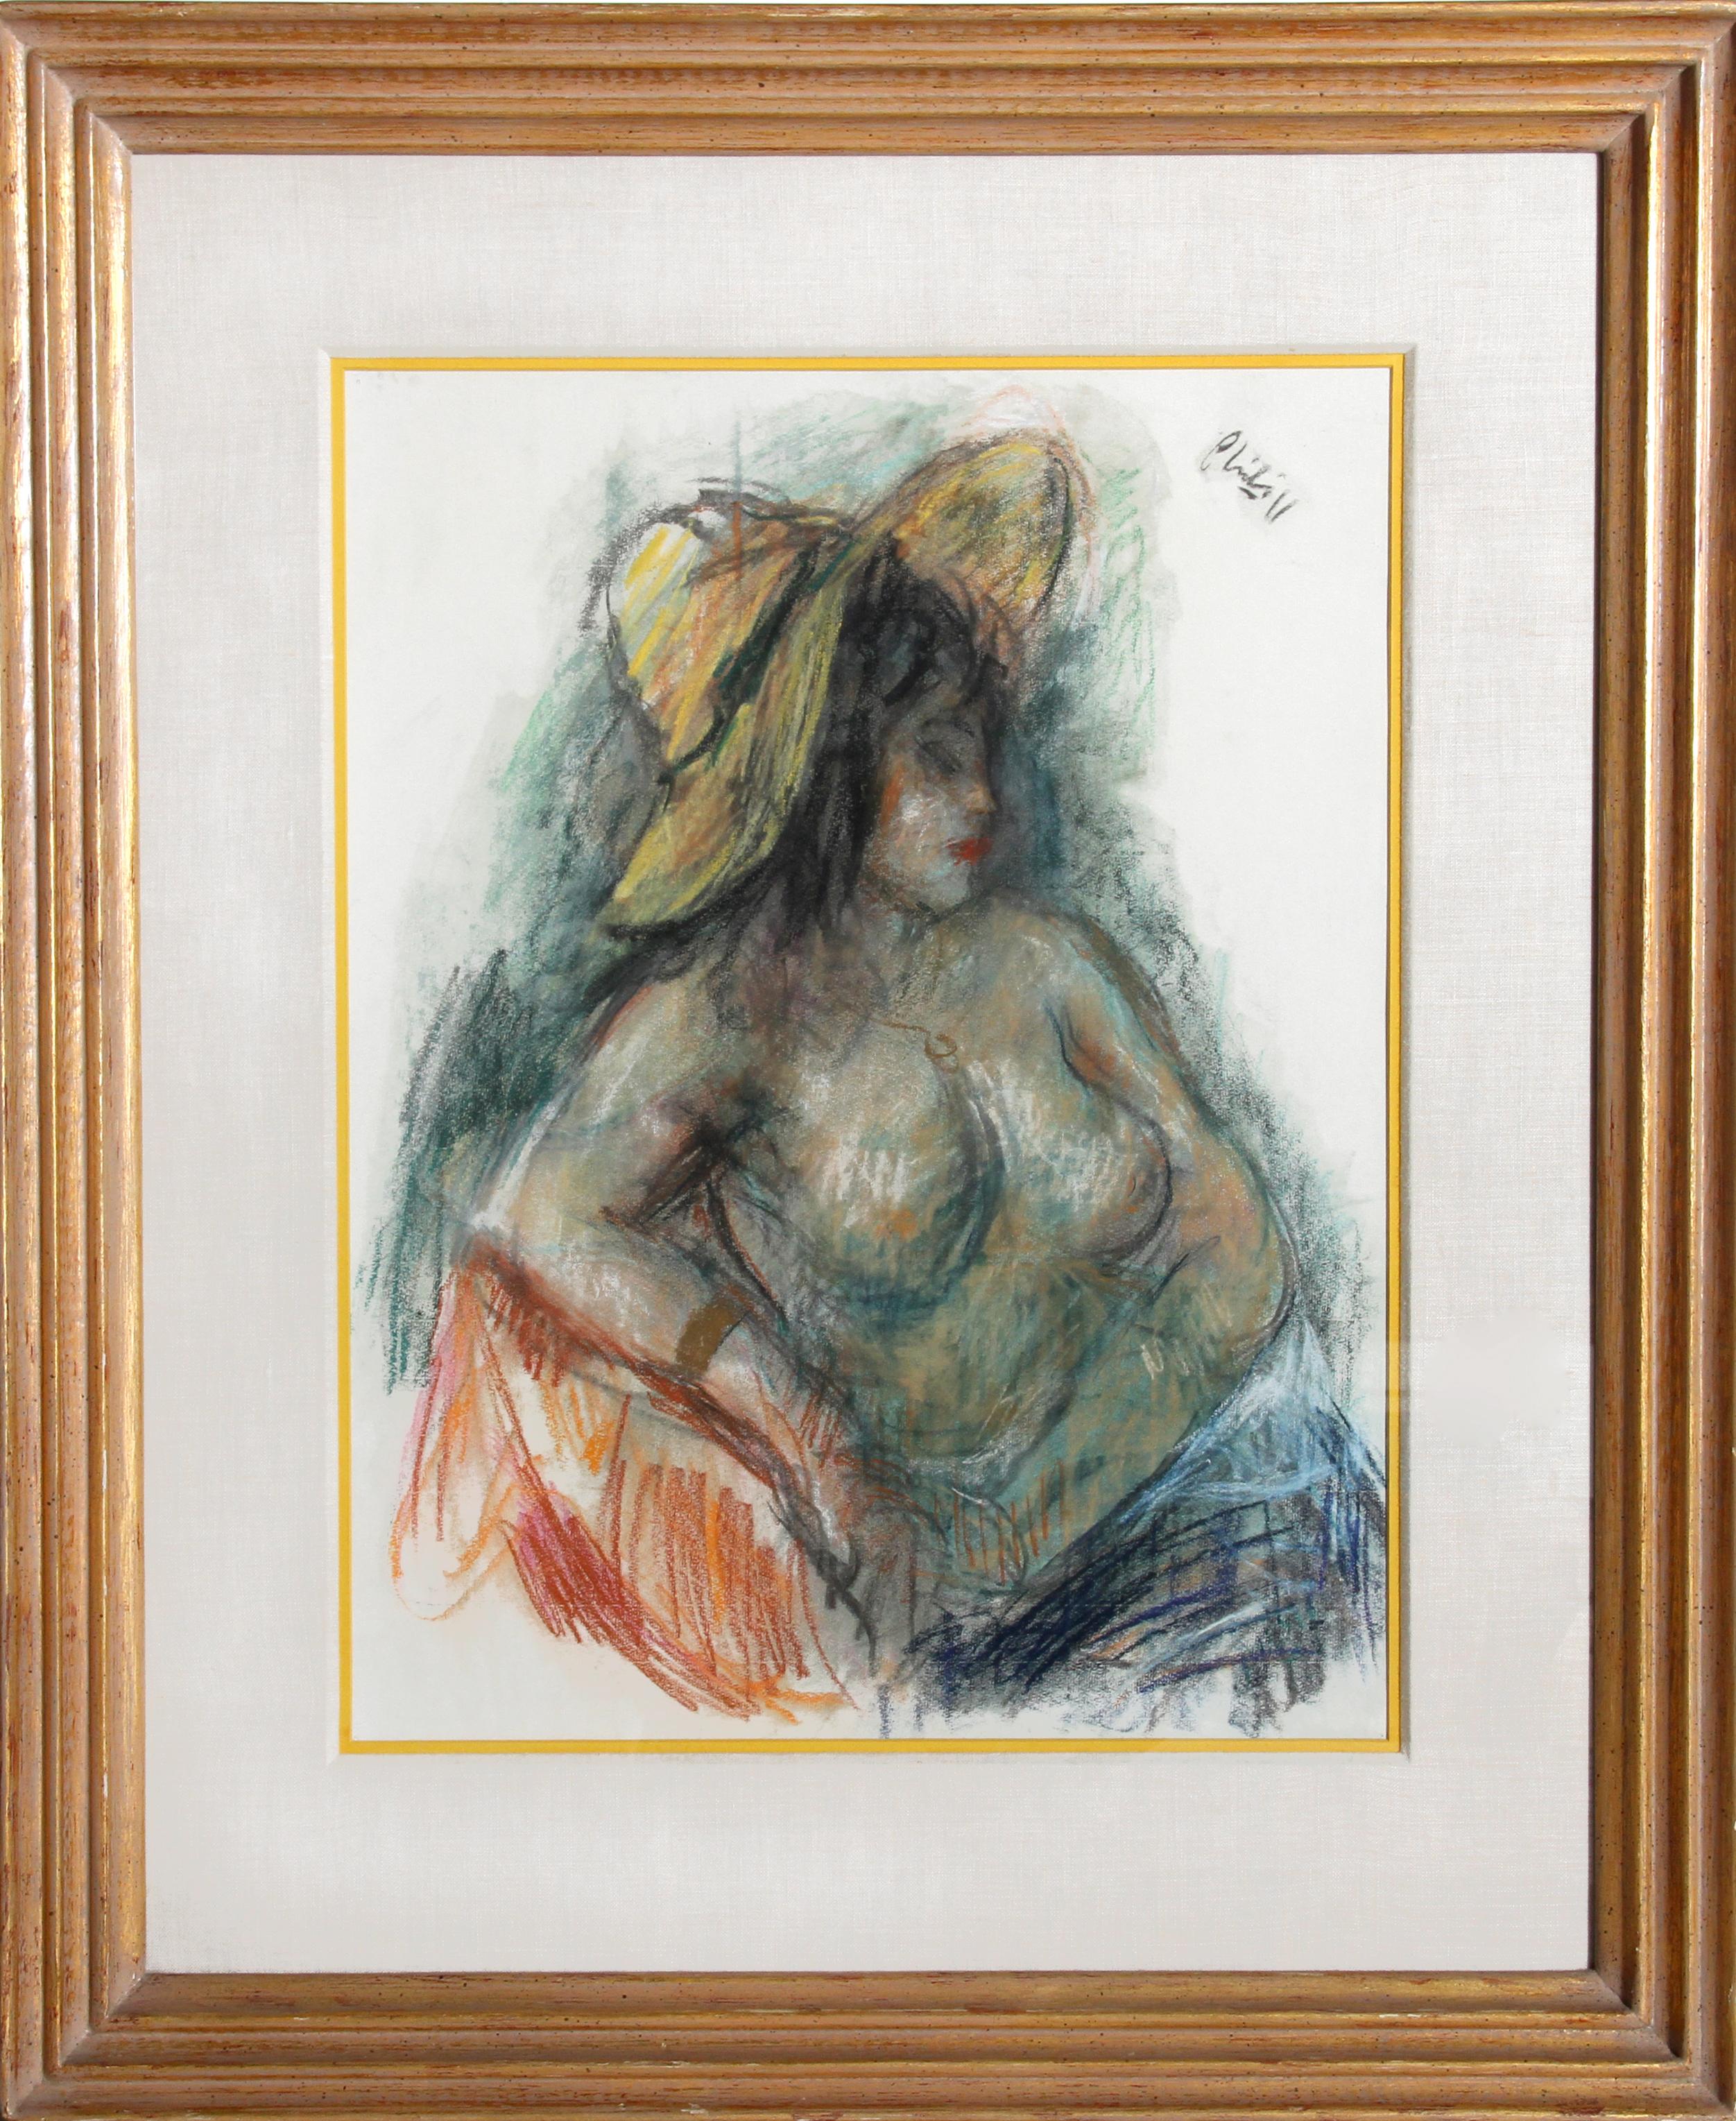 Sitzende nackte Frau mit gelbem Hut, pastellfarbene Zeichnung von Robert Philipp